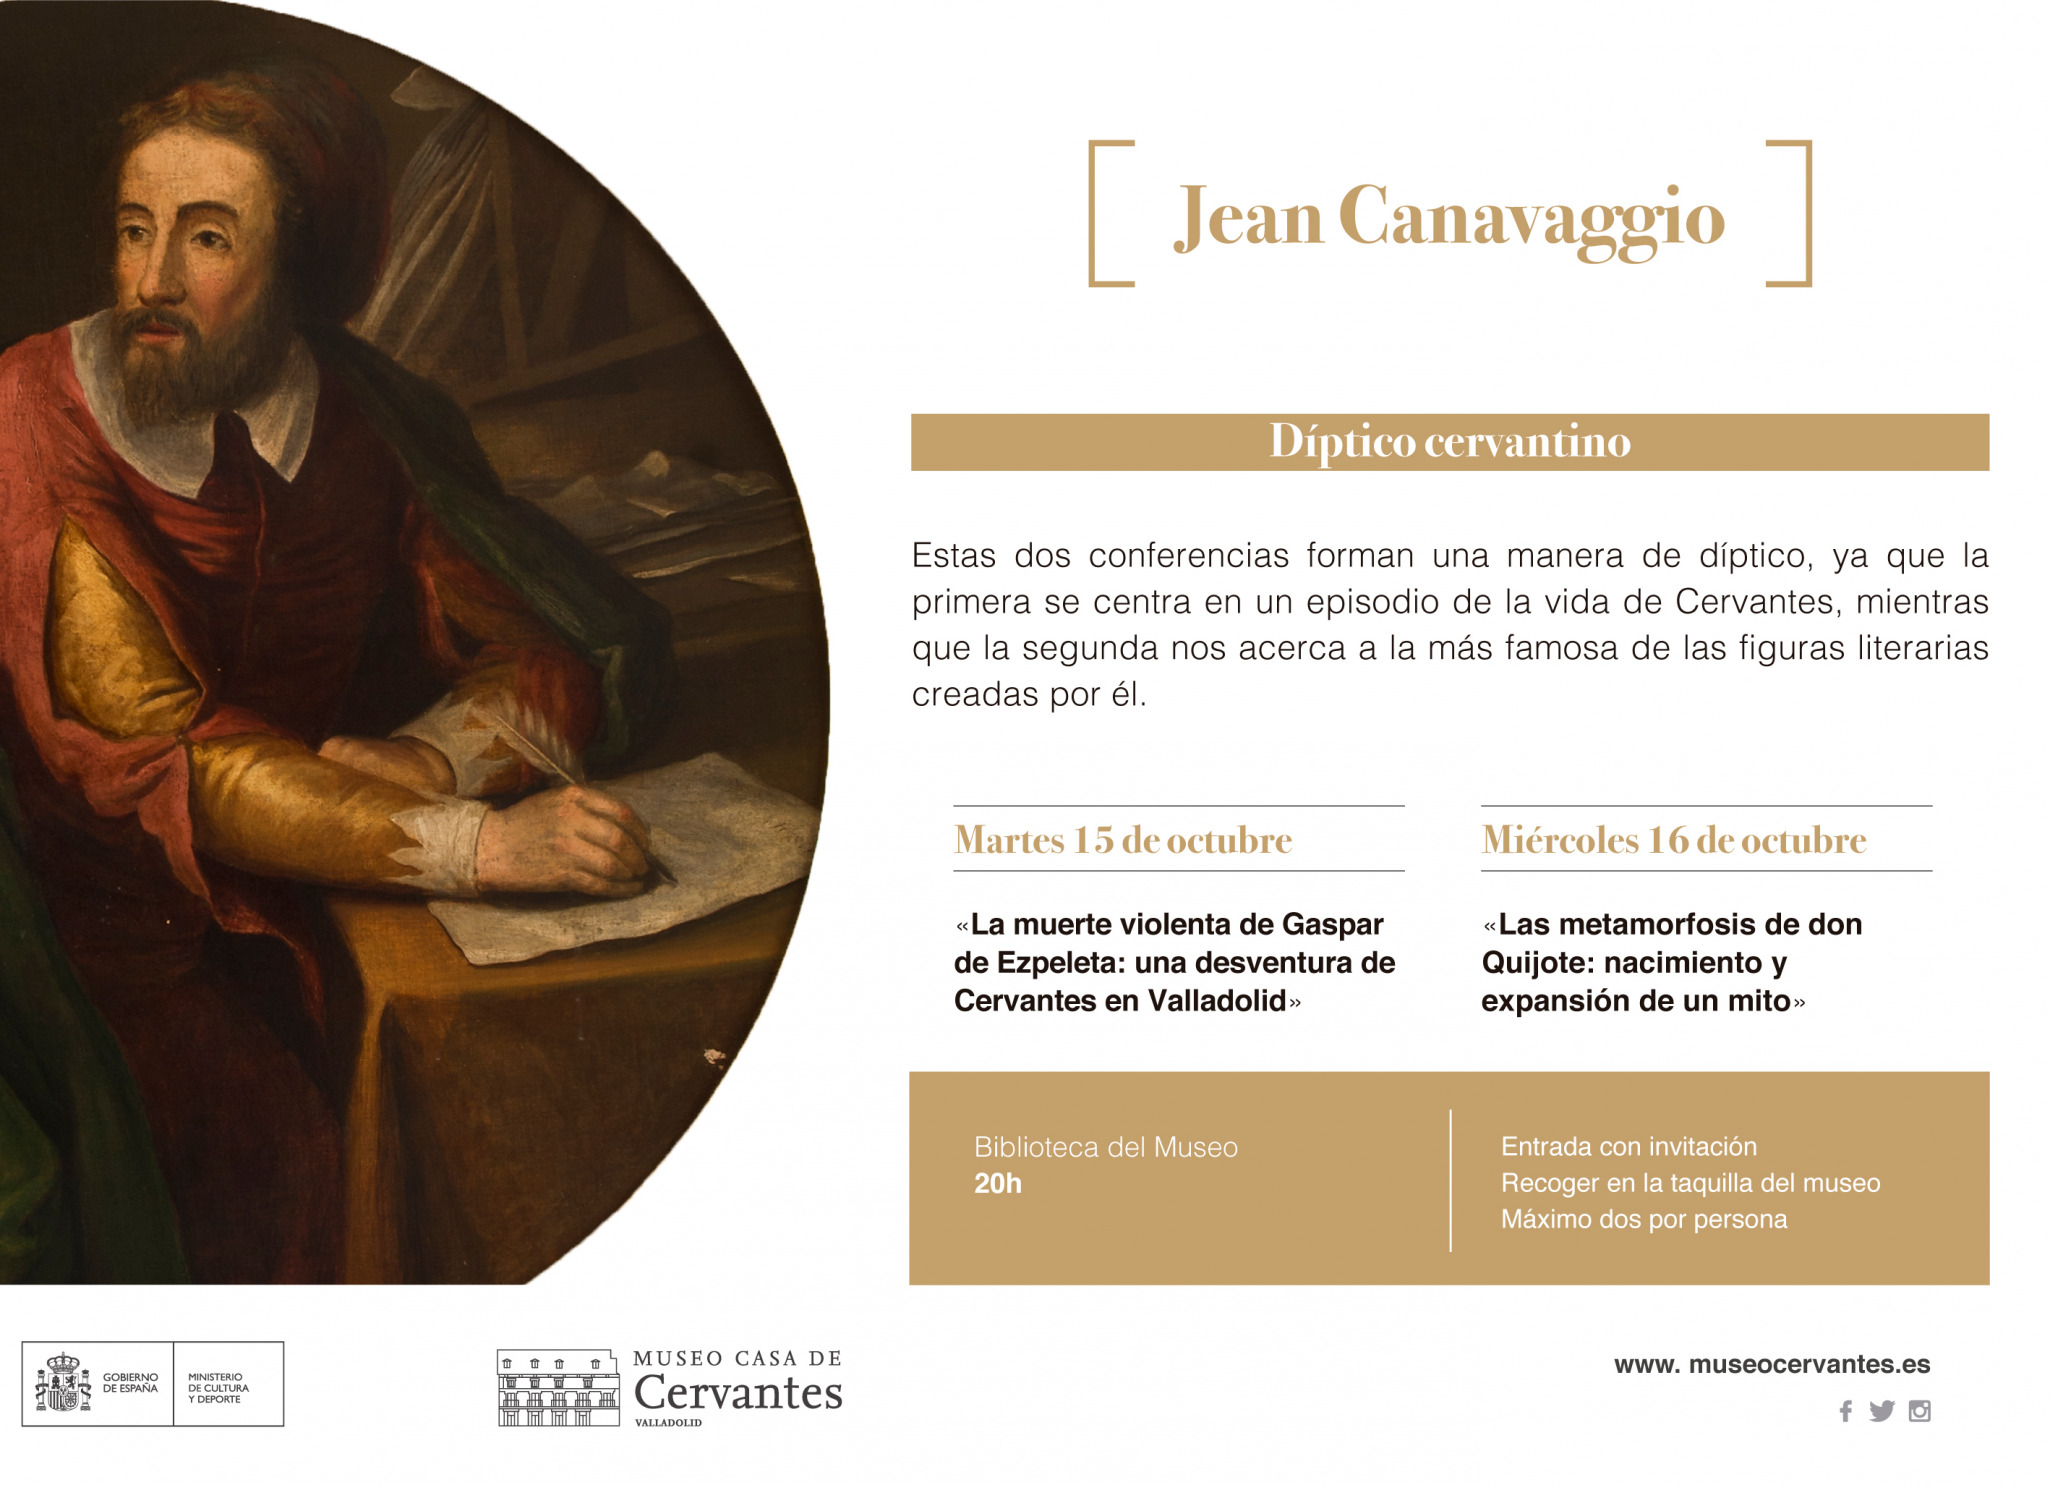 En el Museo Casa de Cervantes, Jean Canavaggio analiza la muerte violenta de Ezpeleta y las metamorfosis del Quijote